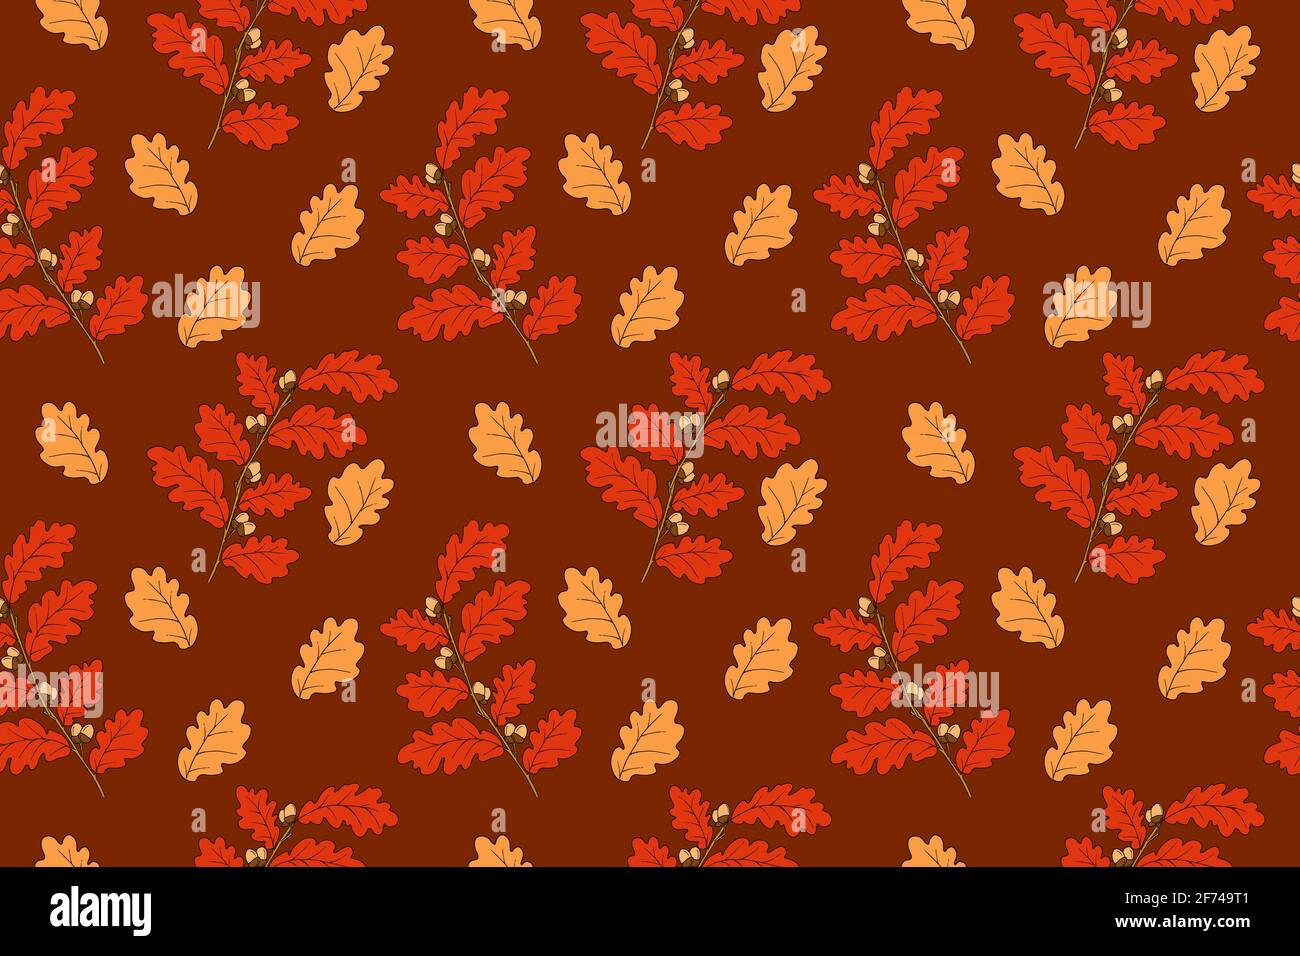 Disegnare a mano rami di quercia con ghiande in una tavolozza profonda autunno. Modello vettoriale senza cuciture in autunno. Struttura fogliare rossa Illustrazione Vettoriale